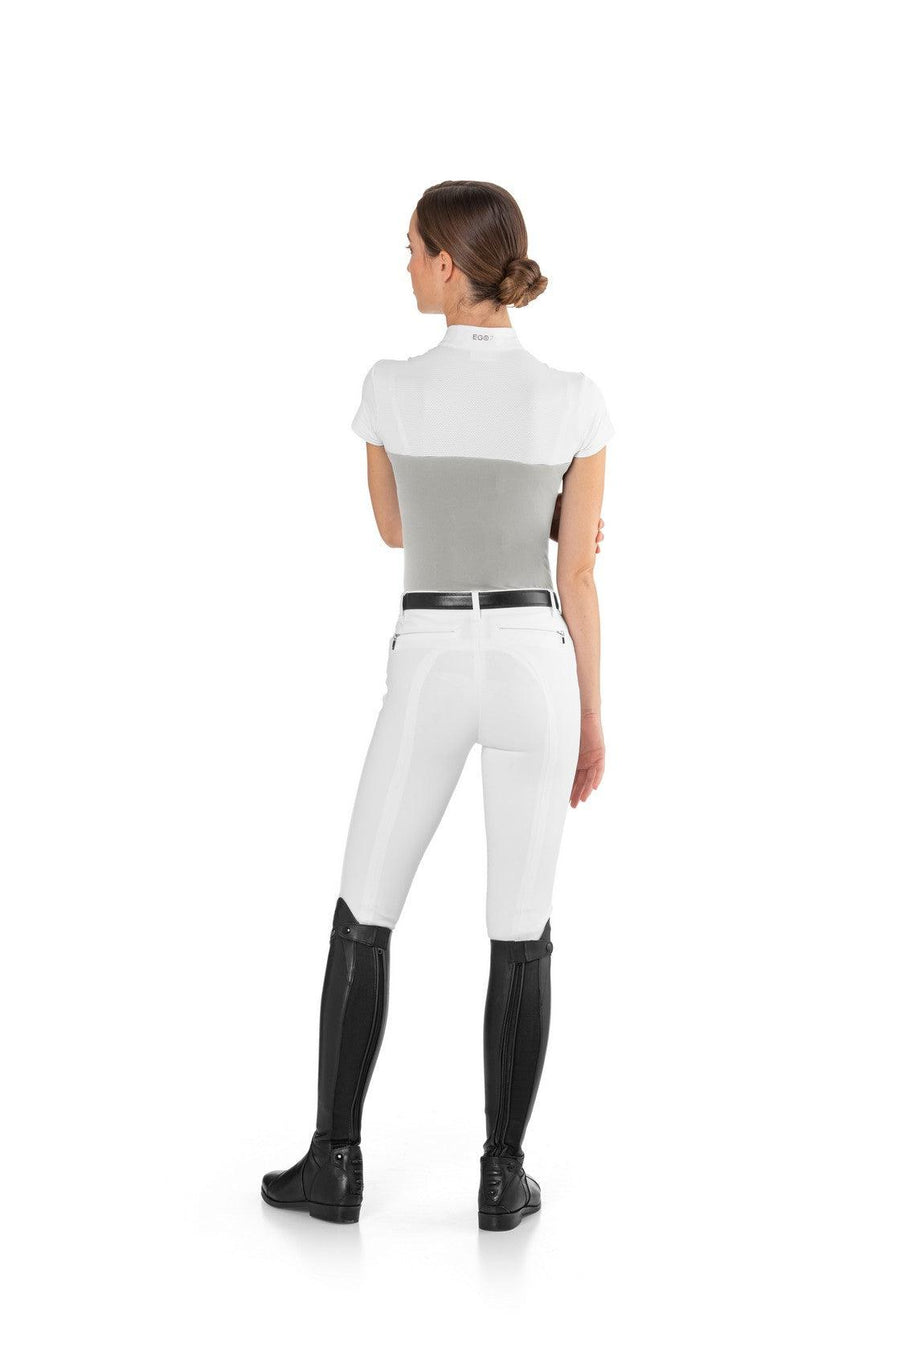 Ego 7 mesh top short or long sleeves for ladies - HorseworldEU